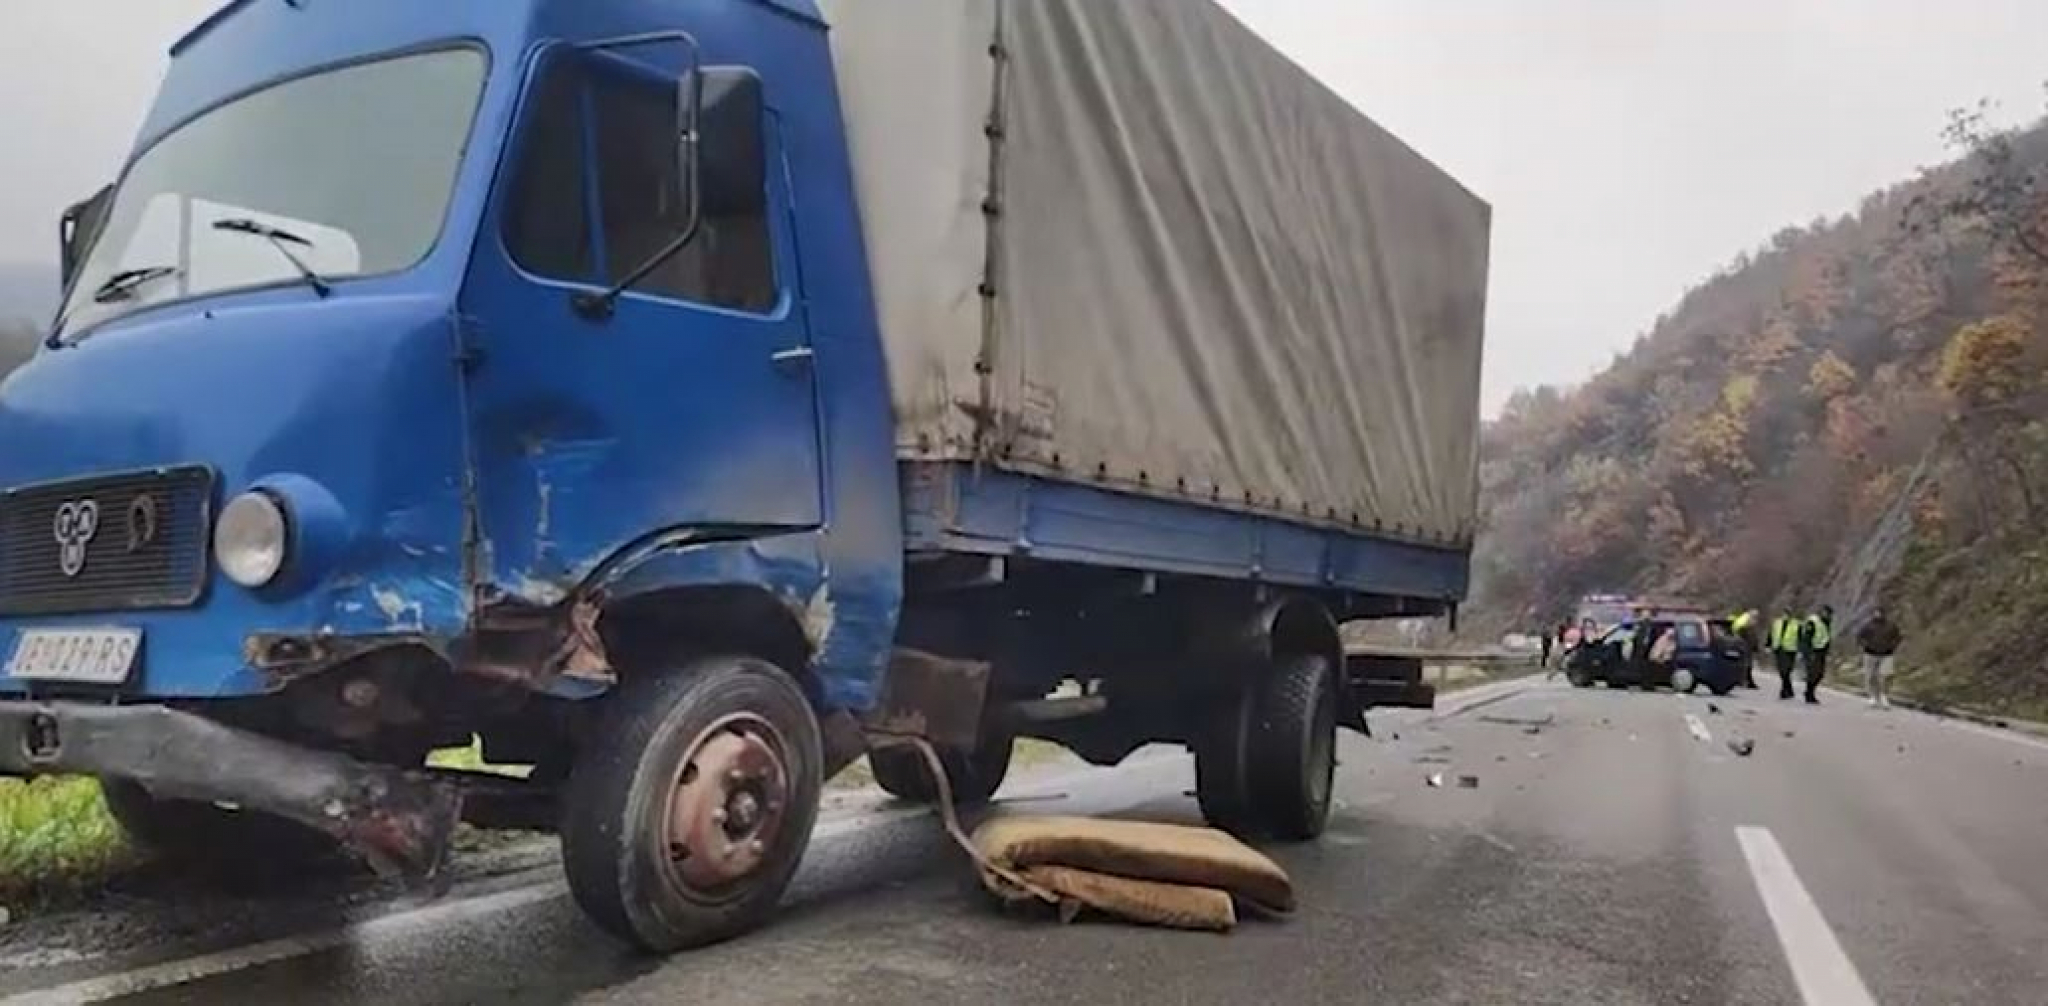 TEŠKA SAOBRAĆAJNA NESREĆA U OVČARSKO - KABLARSKOJ KLISURI Više njih povređeno u sudaru kamiona i automobila! (FOTO)